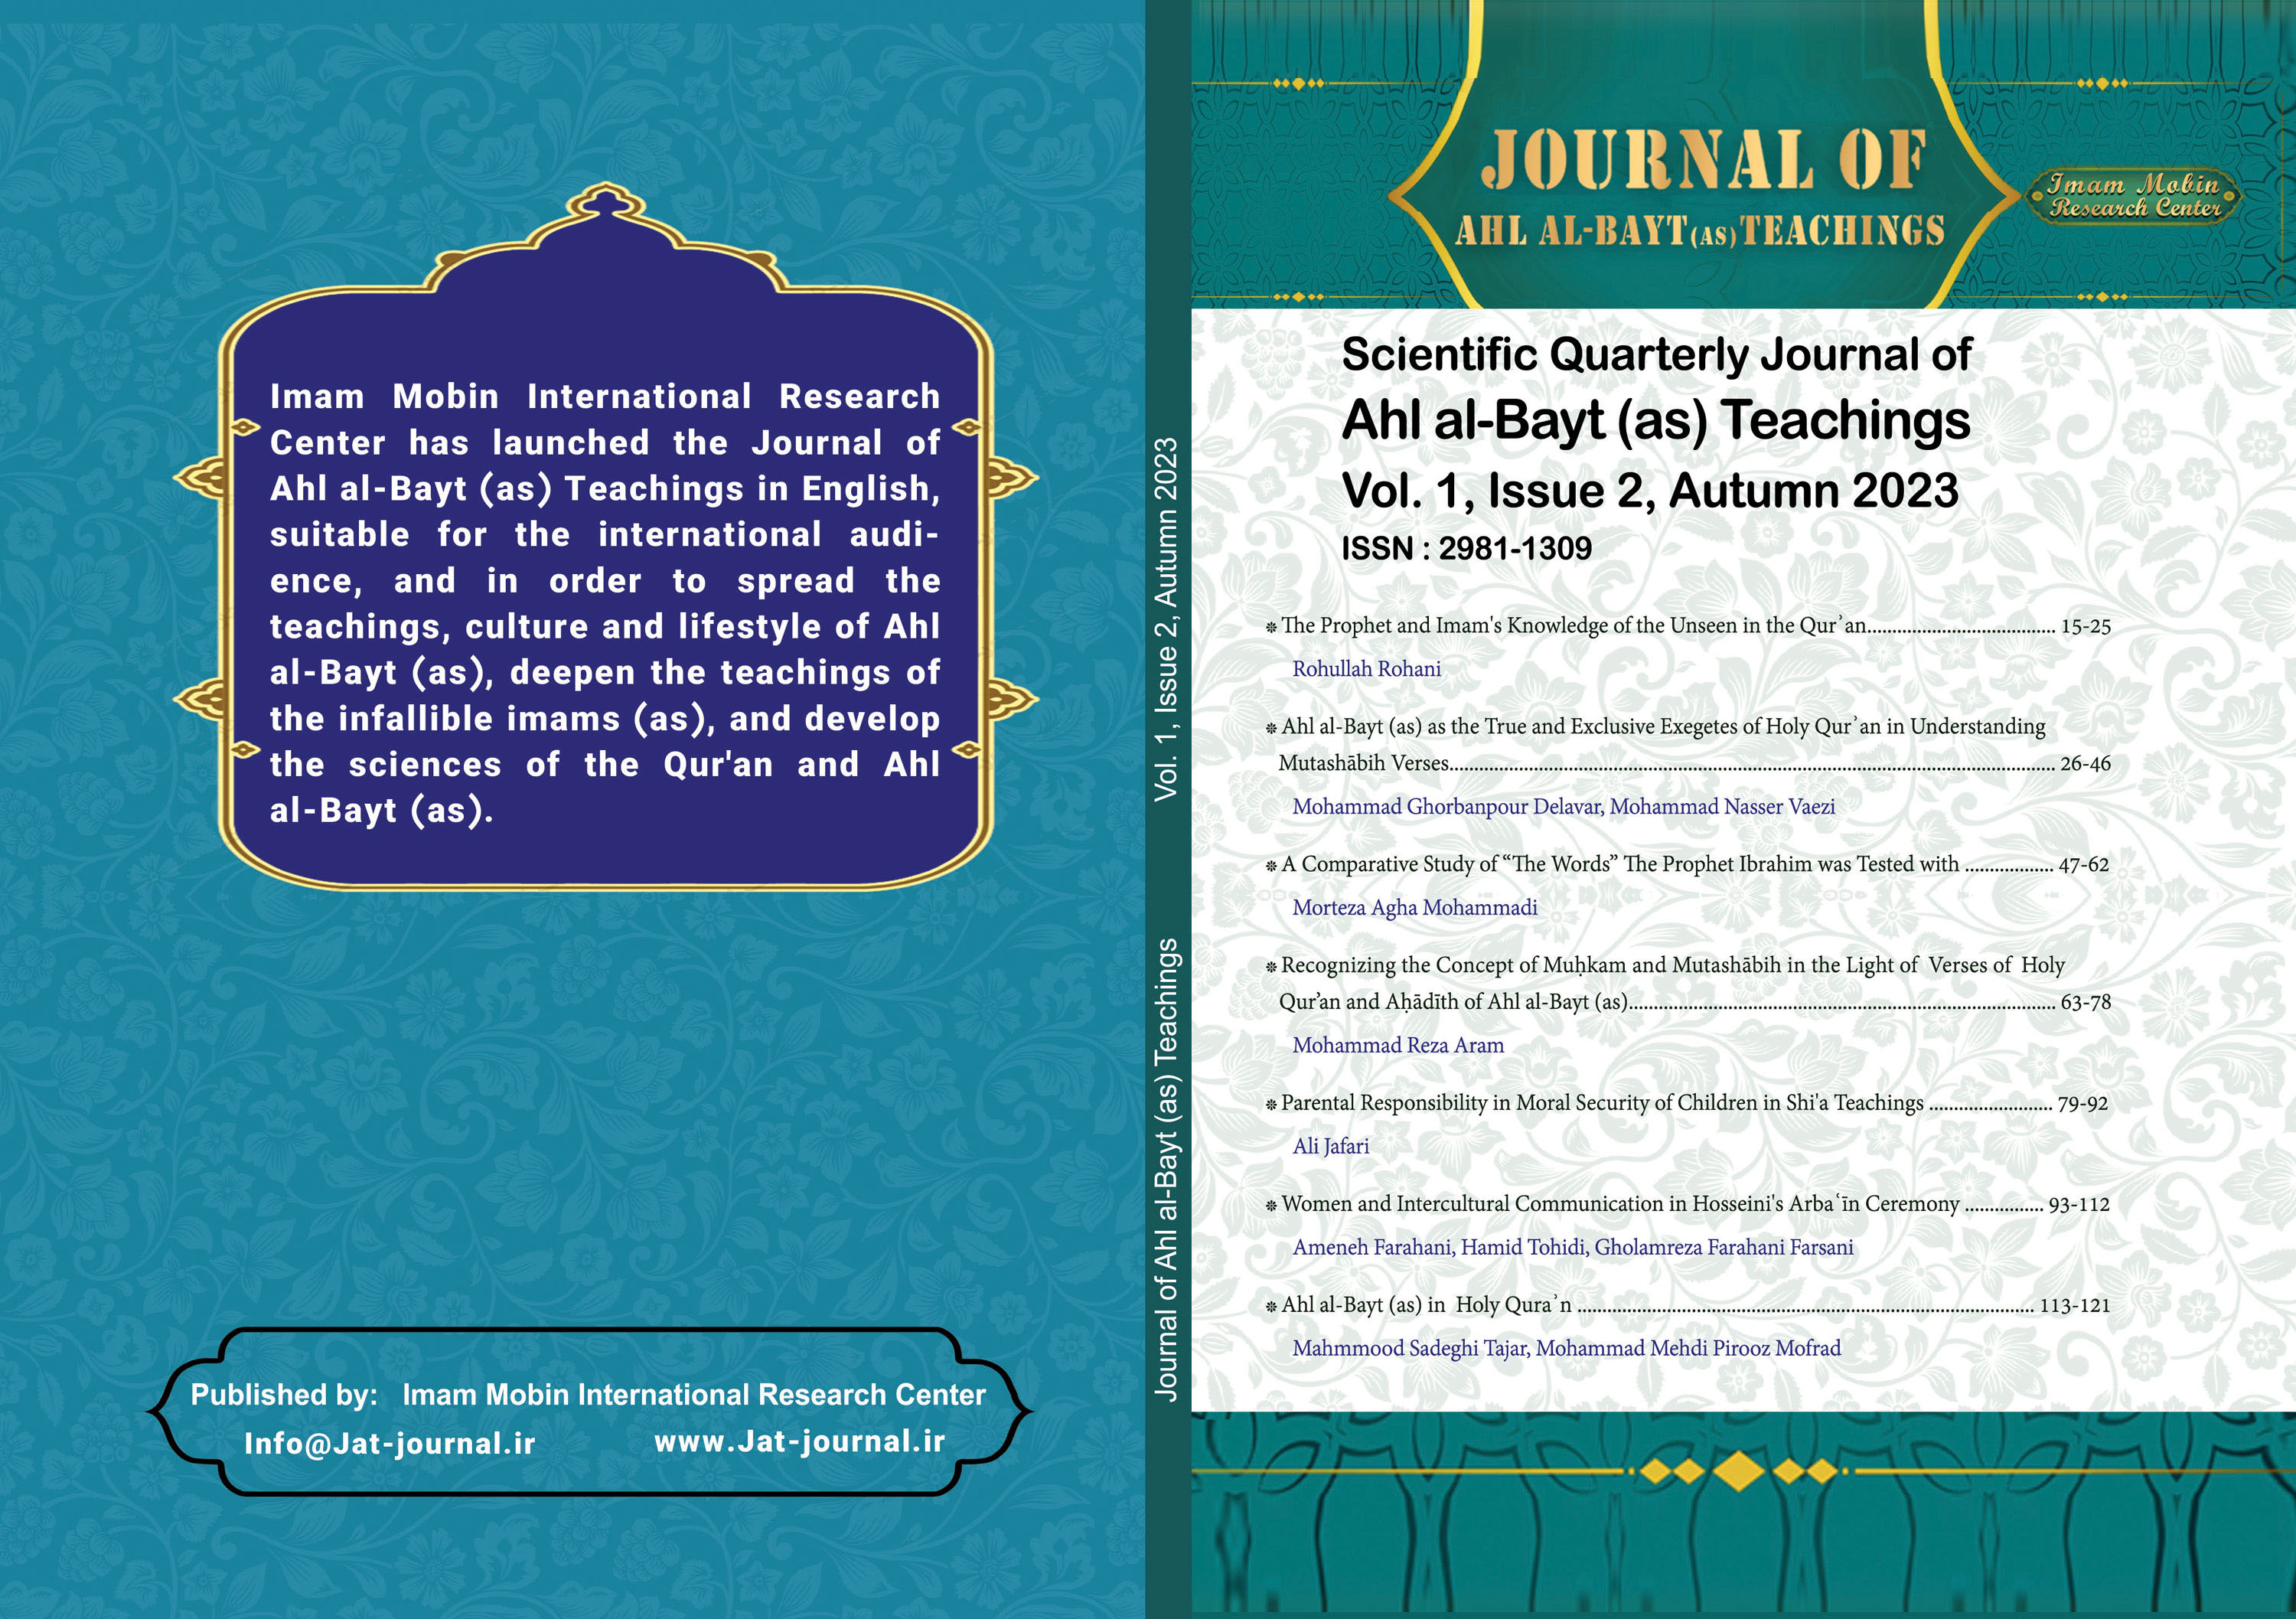 Journal of Ahl al-Bayt (as) Teachings